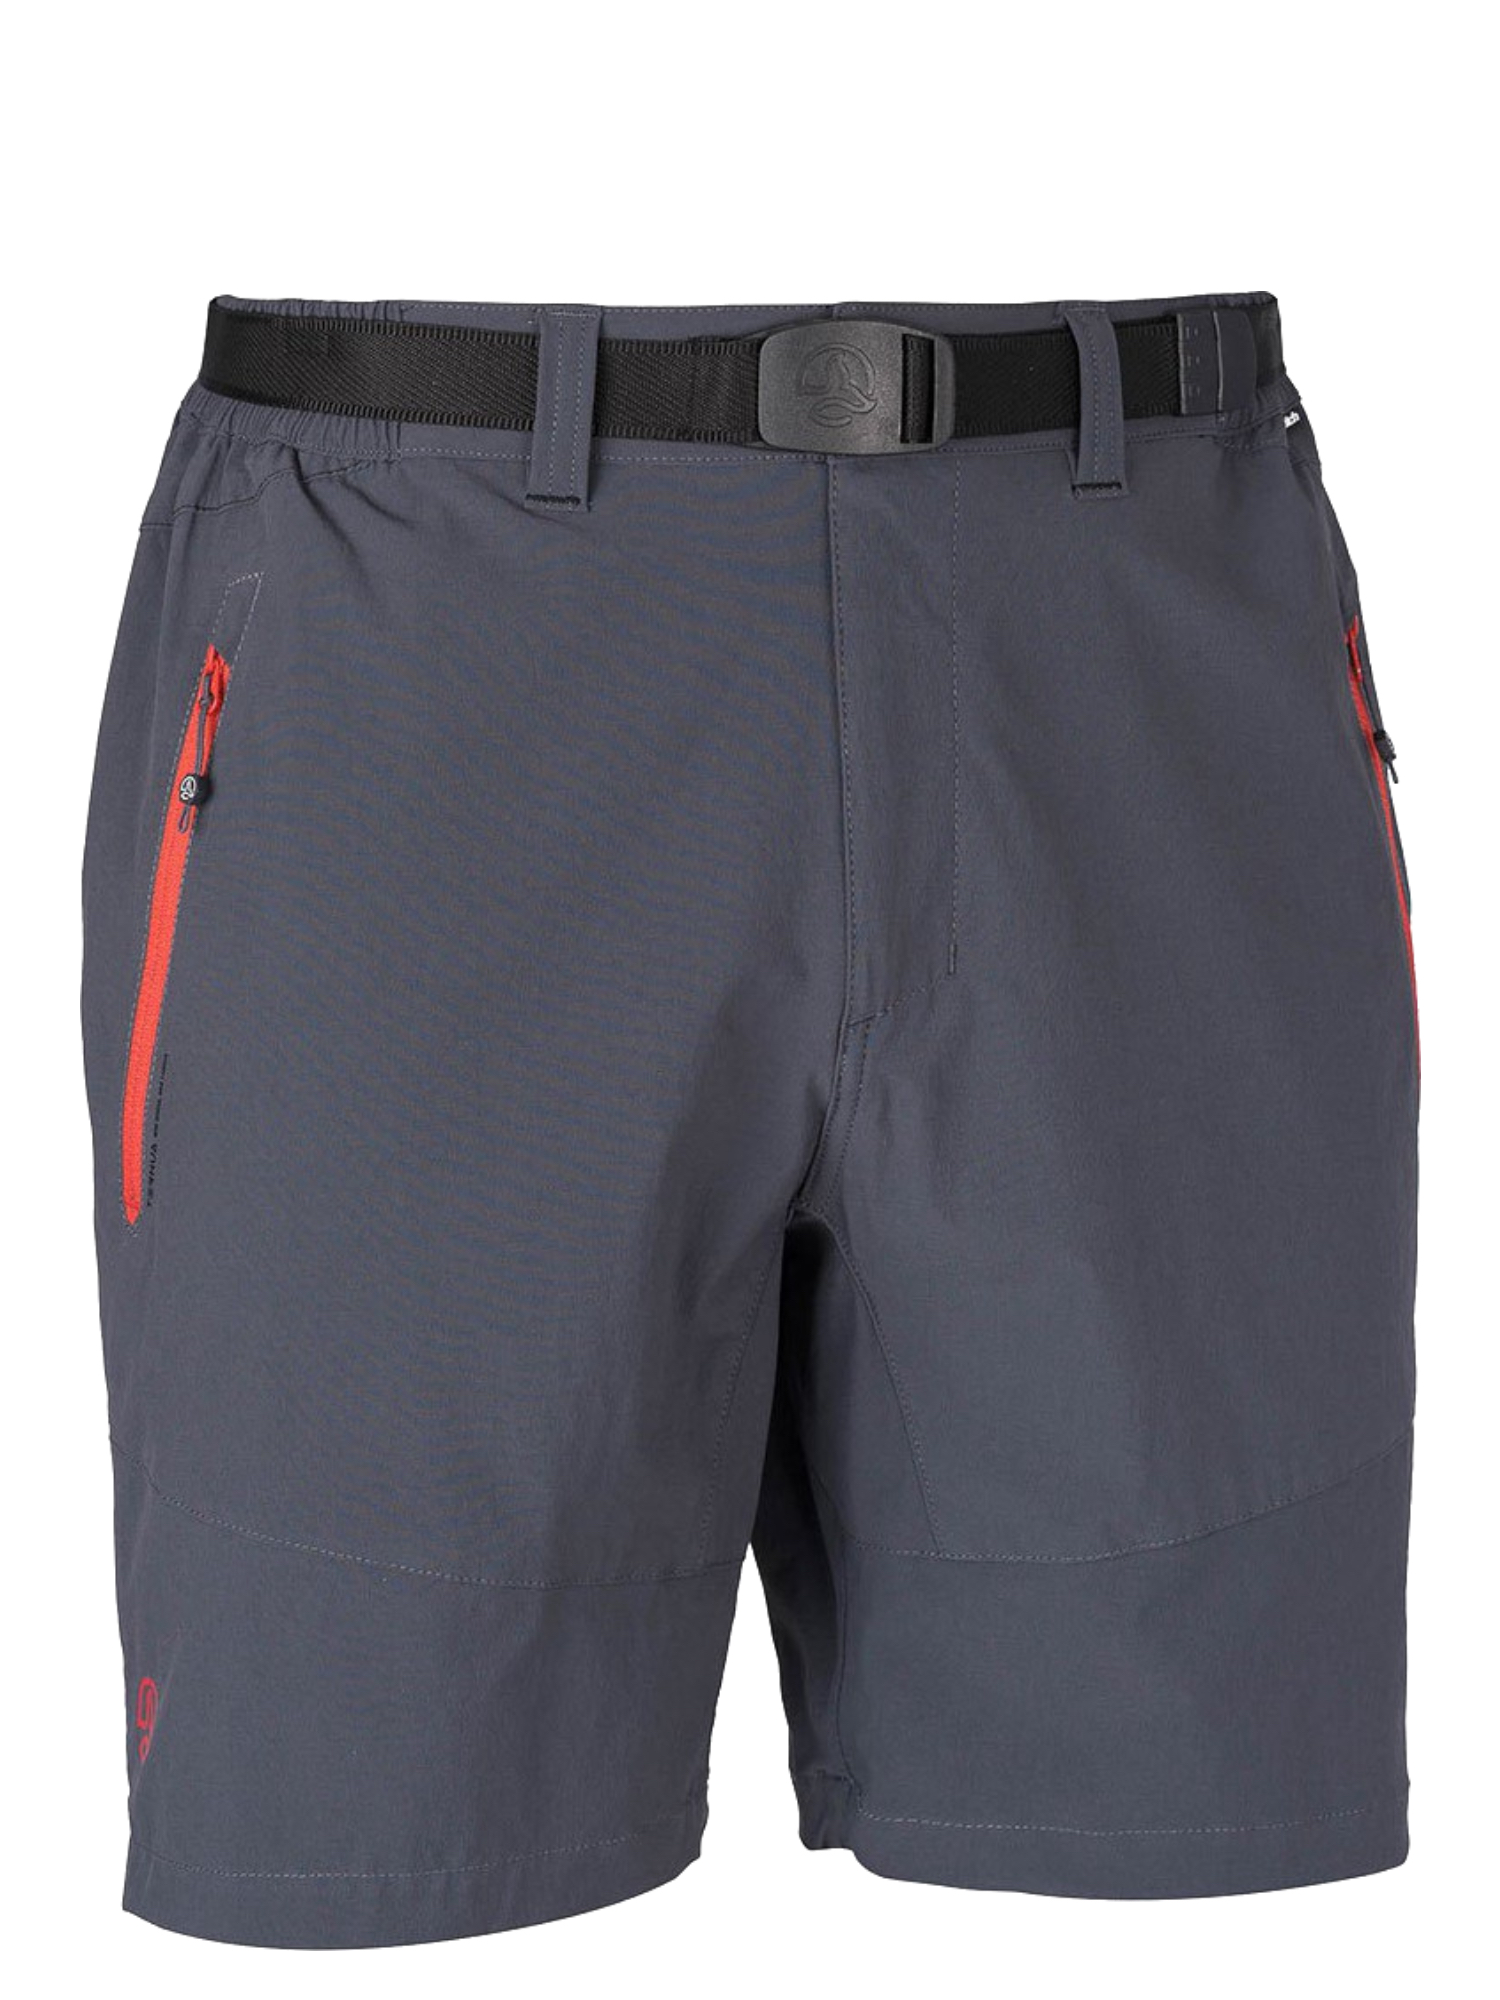 Спортивные шорты мужские Ternua Friz Sht M серые XL